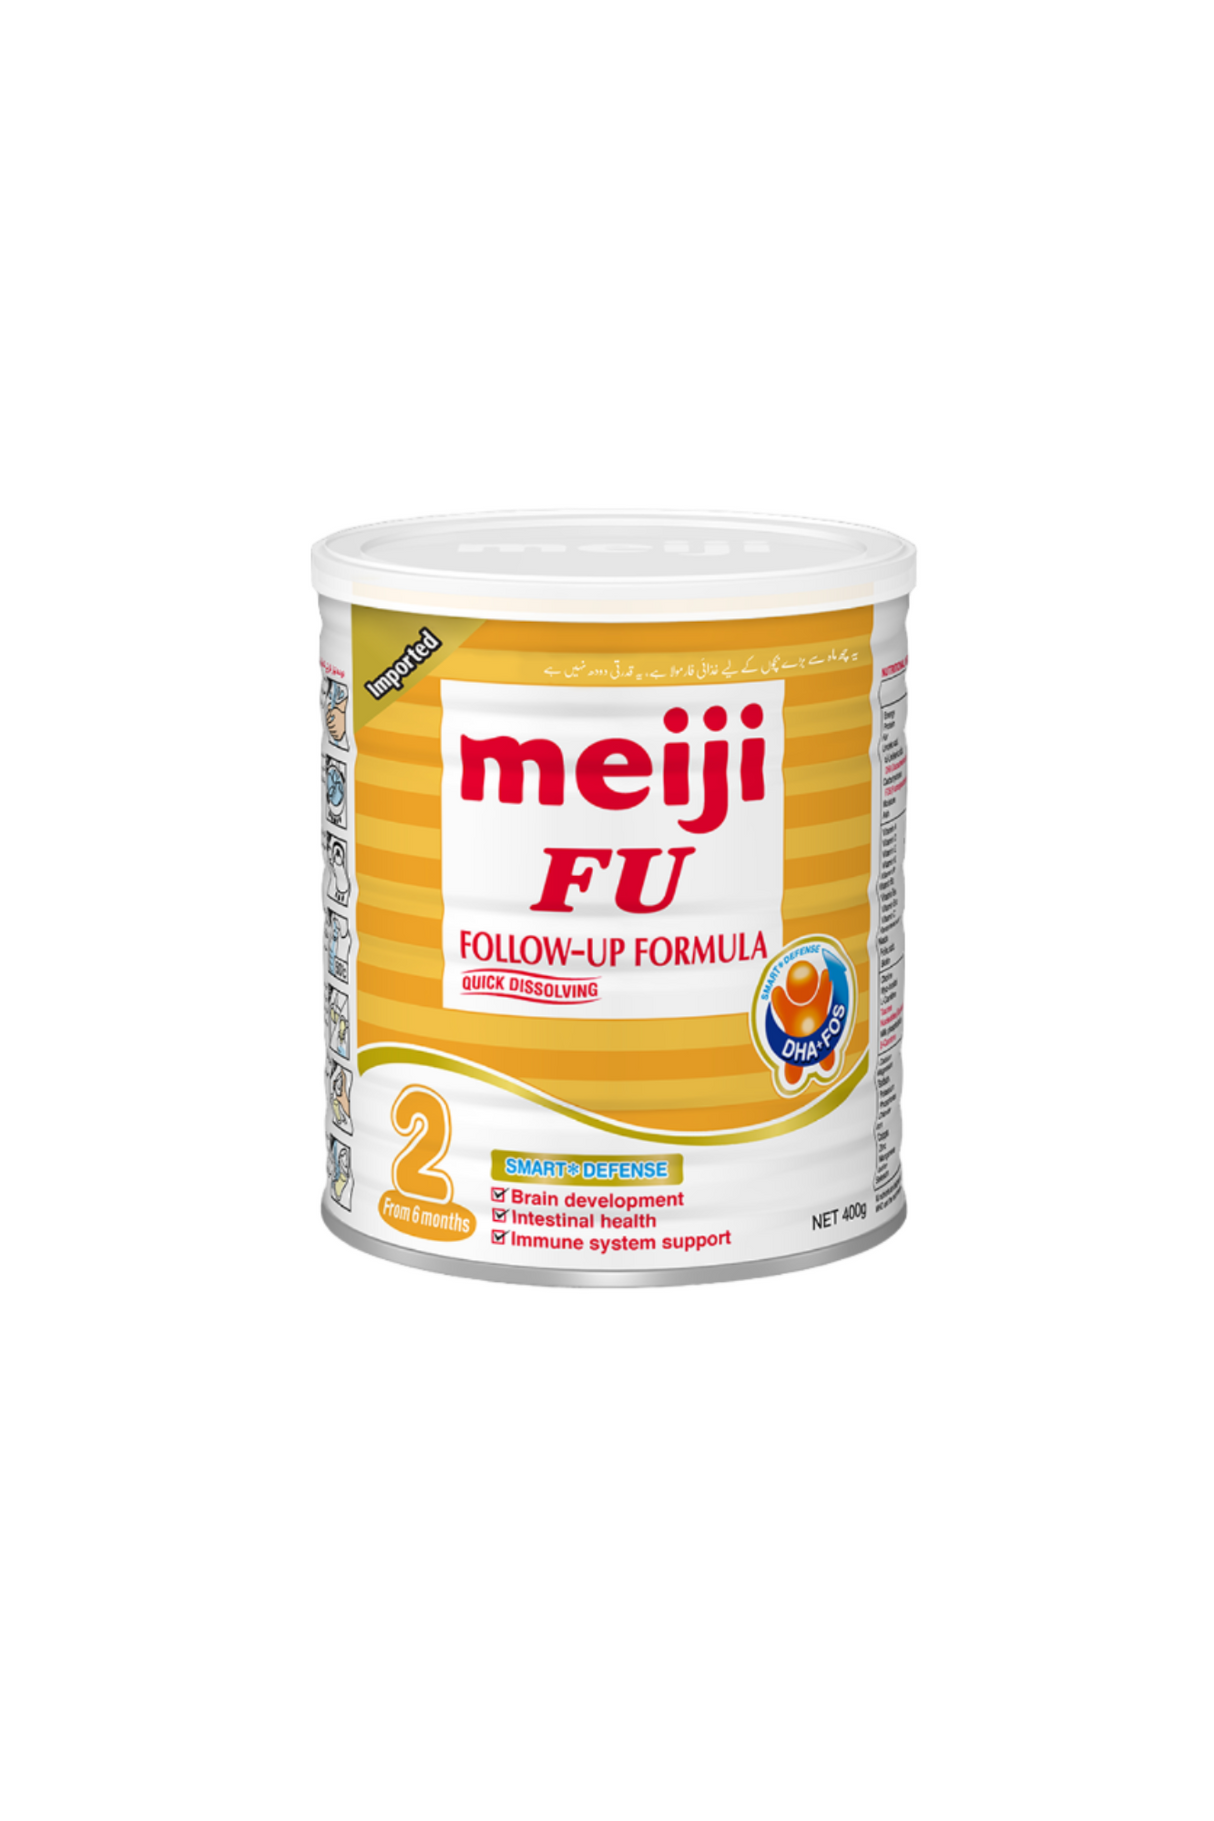 meiji milk powder fu 2 400g